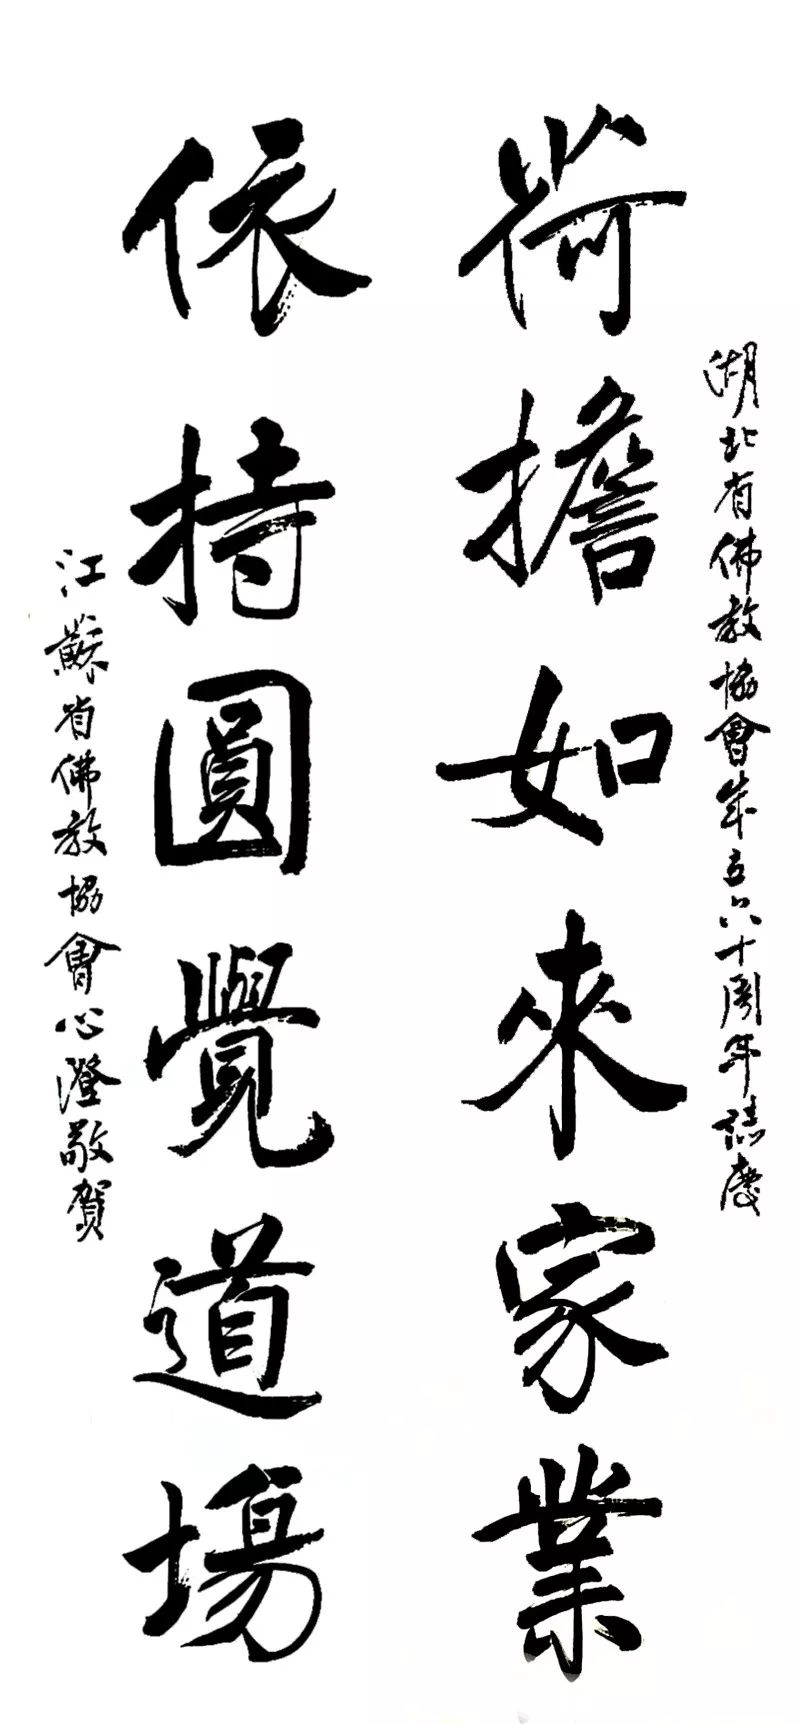 湖北省佛教界庆祝中华人民共和国成立70周年书画作品展在黄梅五祖寺开幕